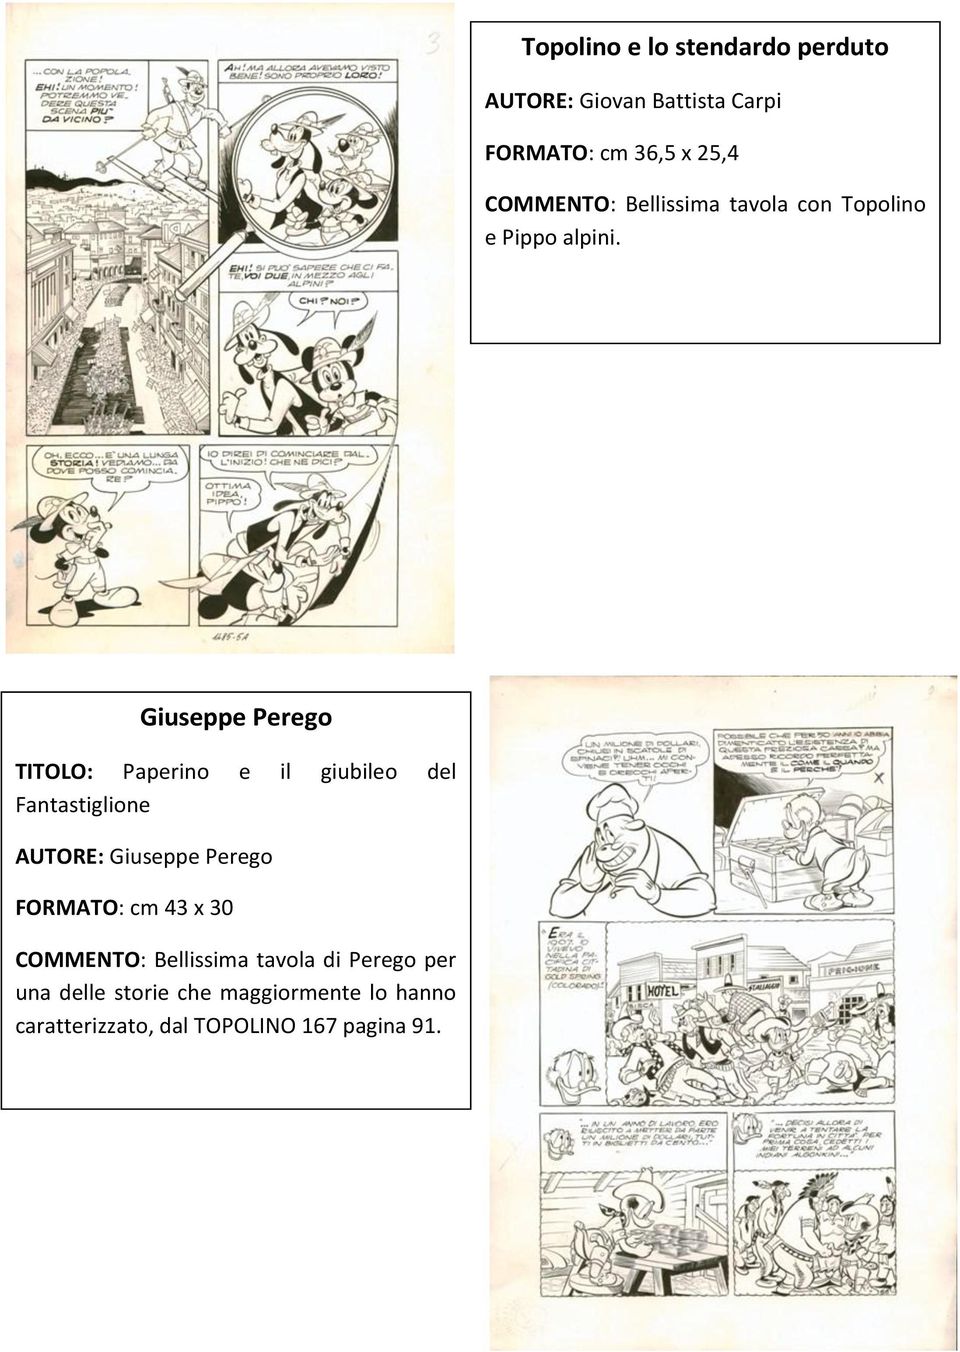 Giuseppe Perego TITOLO: Paperino e il giubileo del Fantastiglione AUTORE: Giuseppe Perego